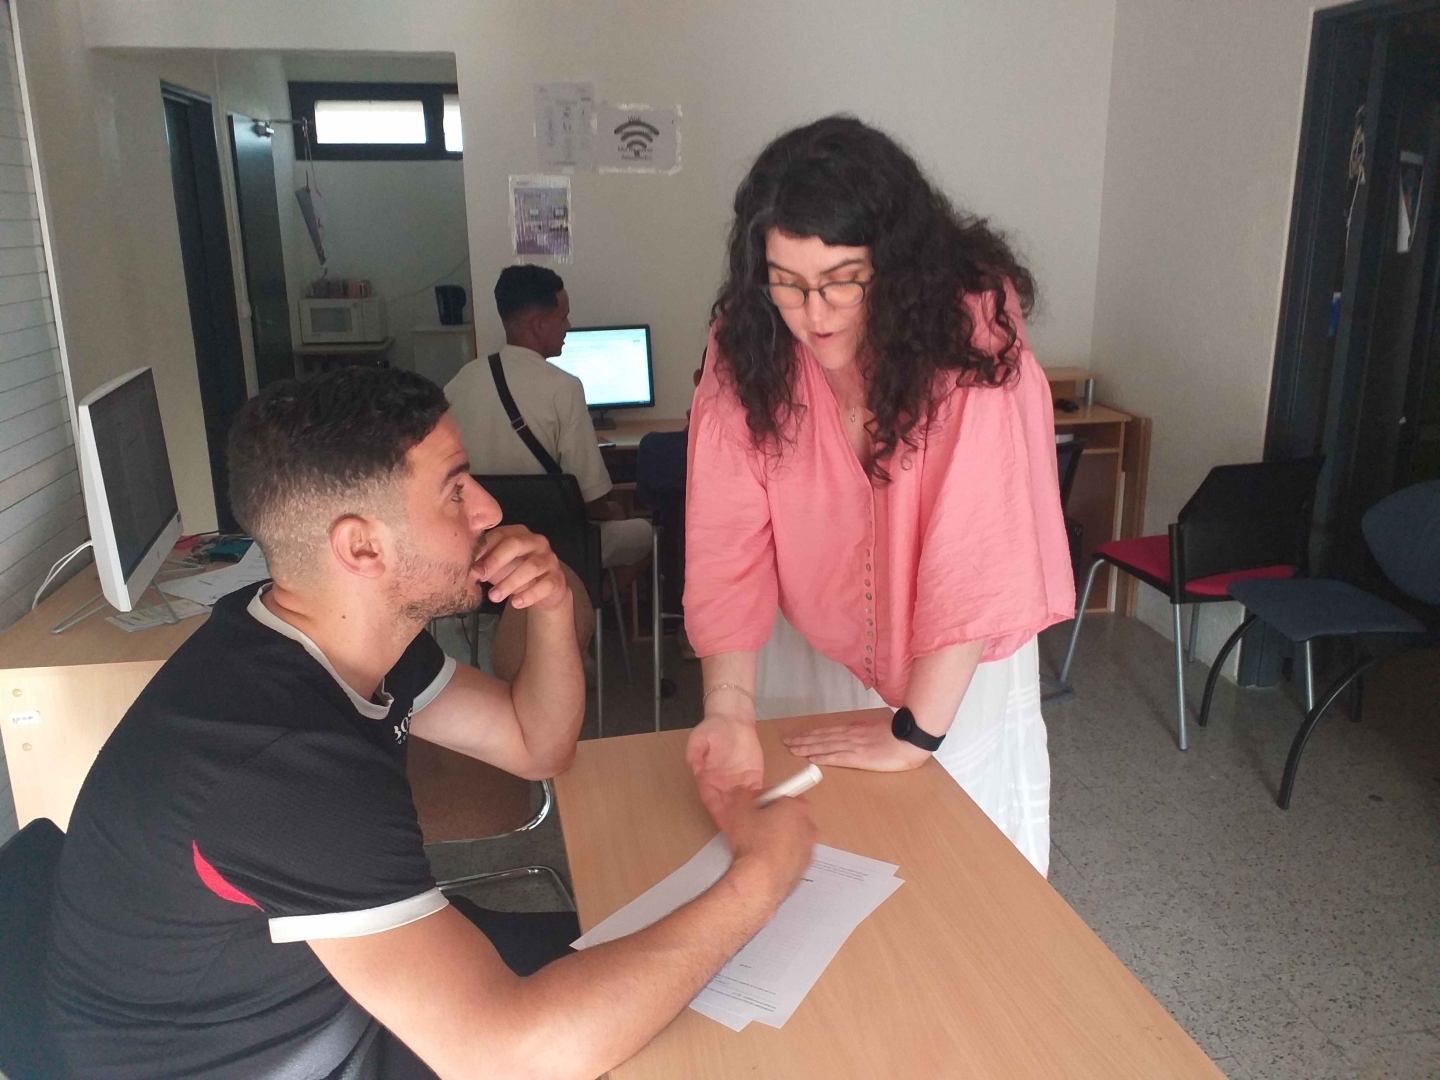 Gharib révise son examen avec l'aide de Margaux Tornaré, de l'association AVEC. 